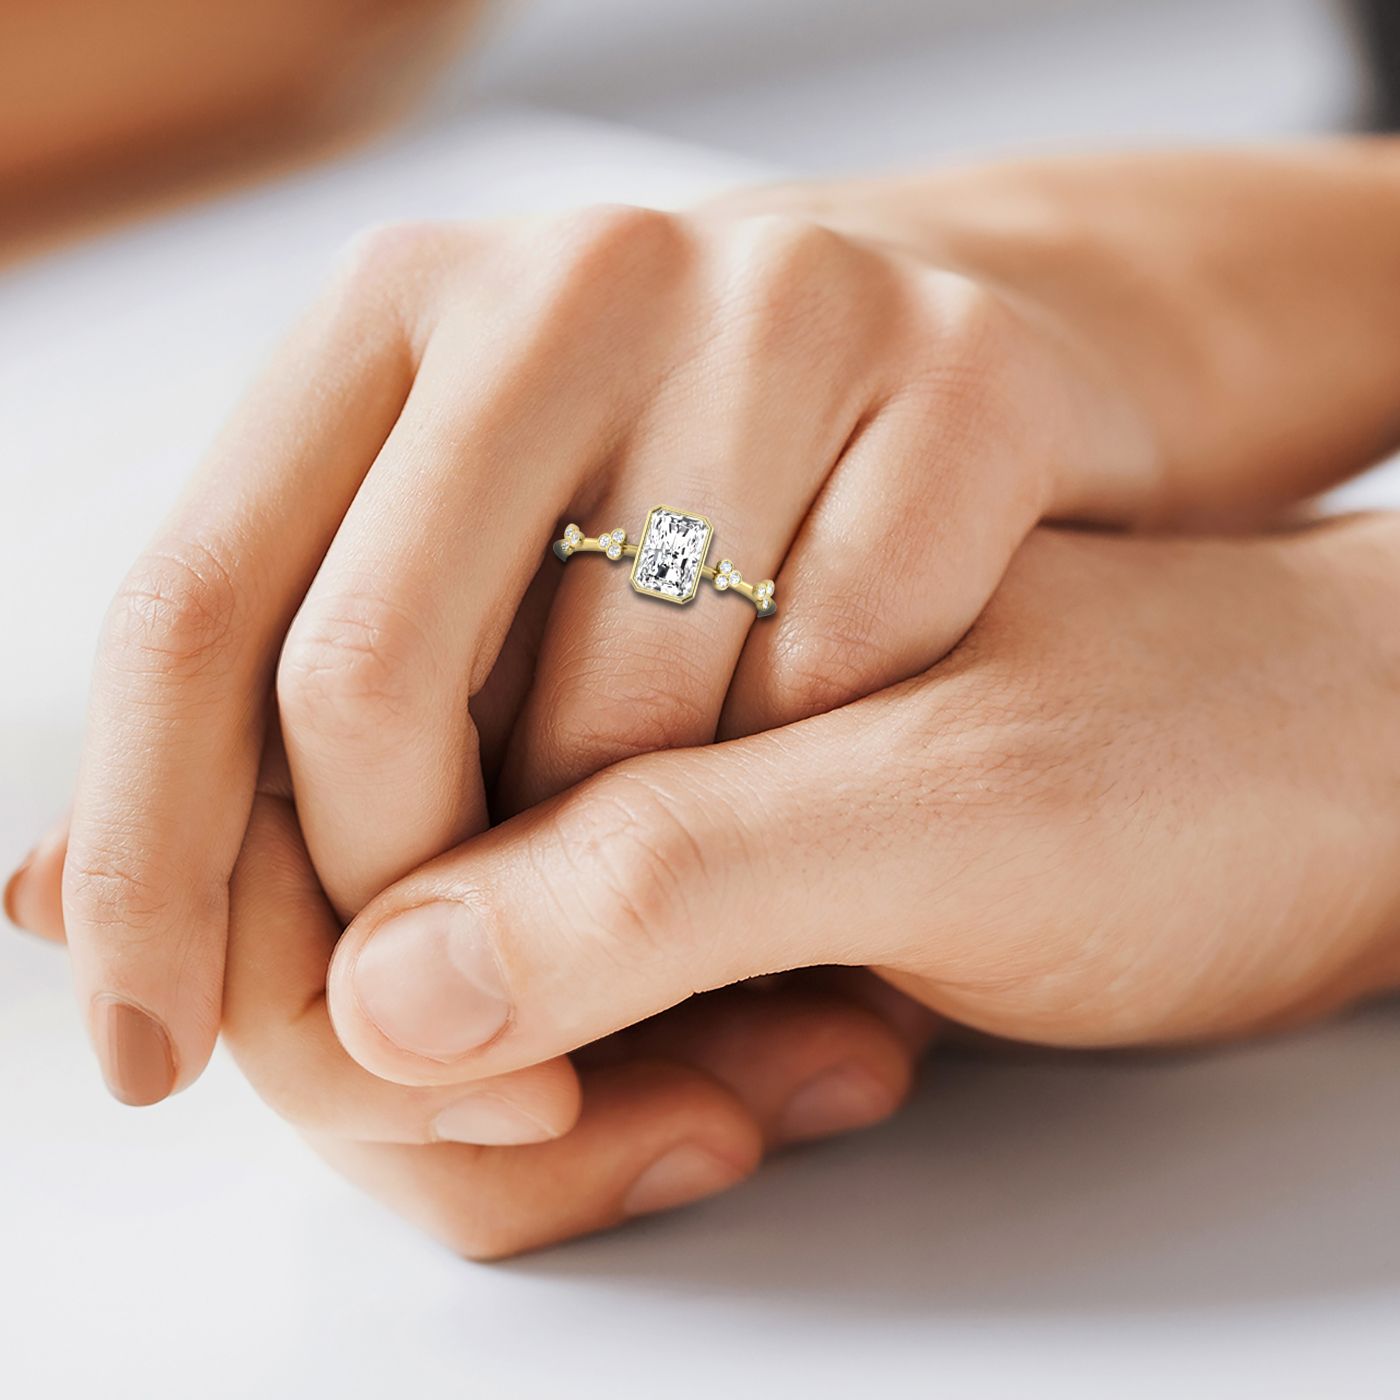 18ky Bezel Set Radiant Engagement Ring With 12 Clover Bezel Set Round Diamonds On Shank